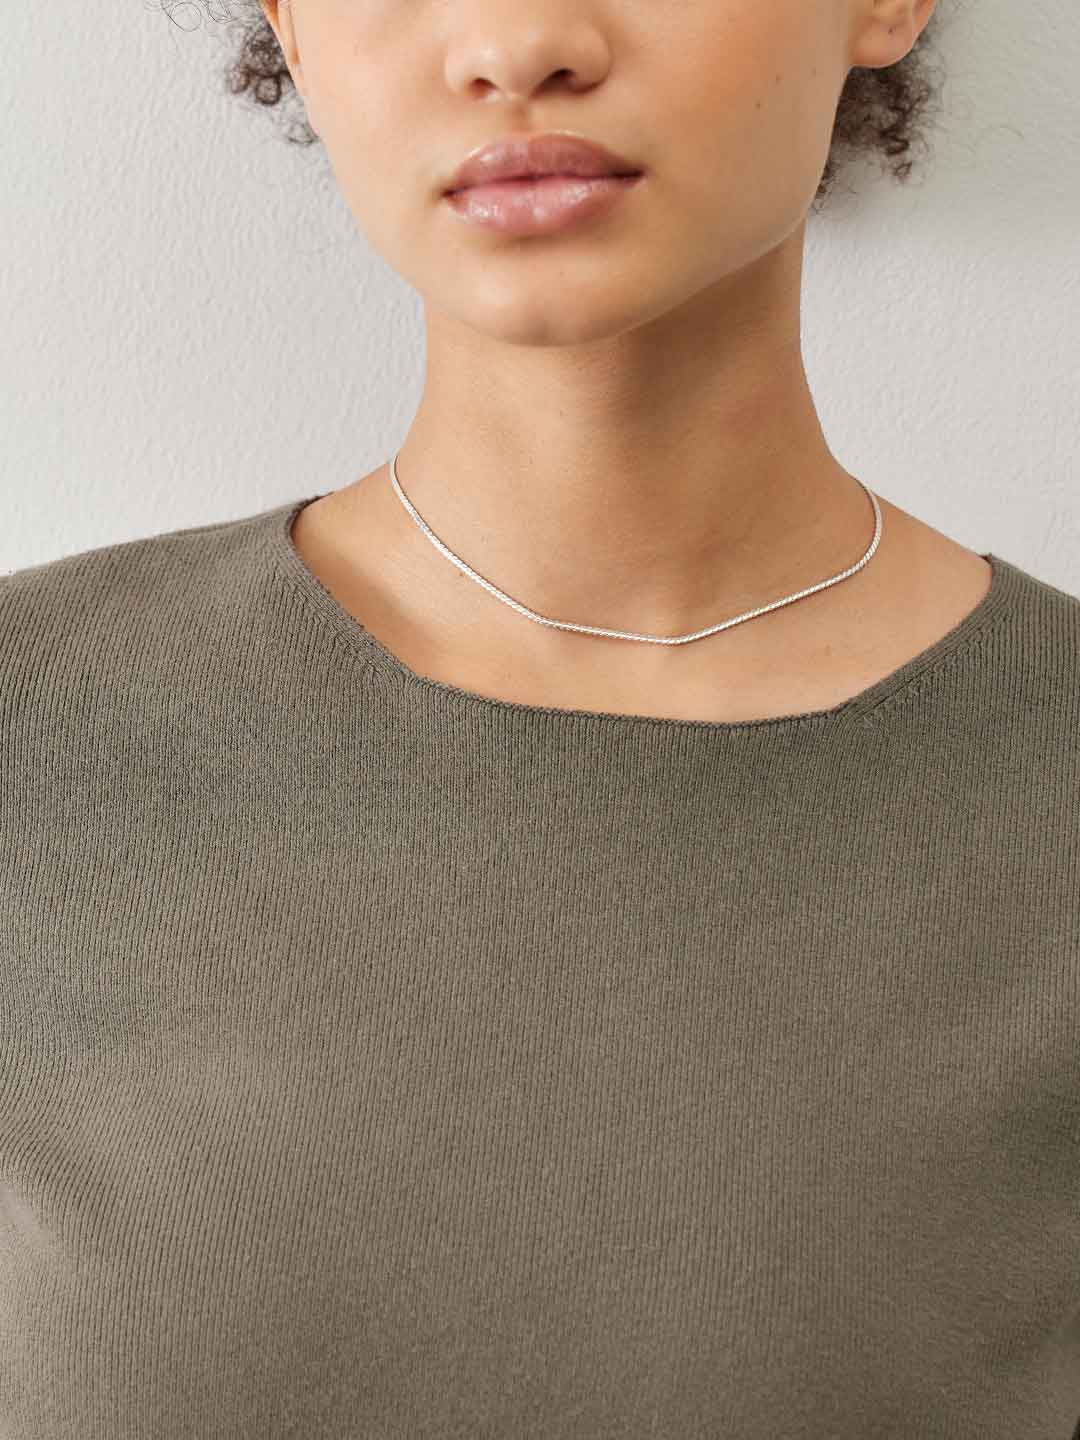 Ada Chain Necklace 35cm - Silver